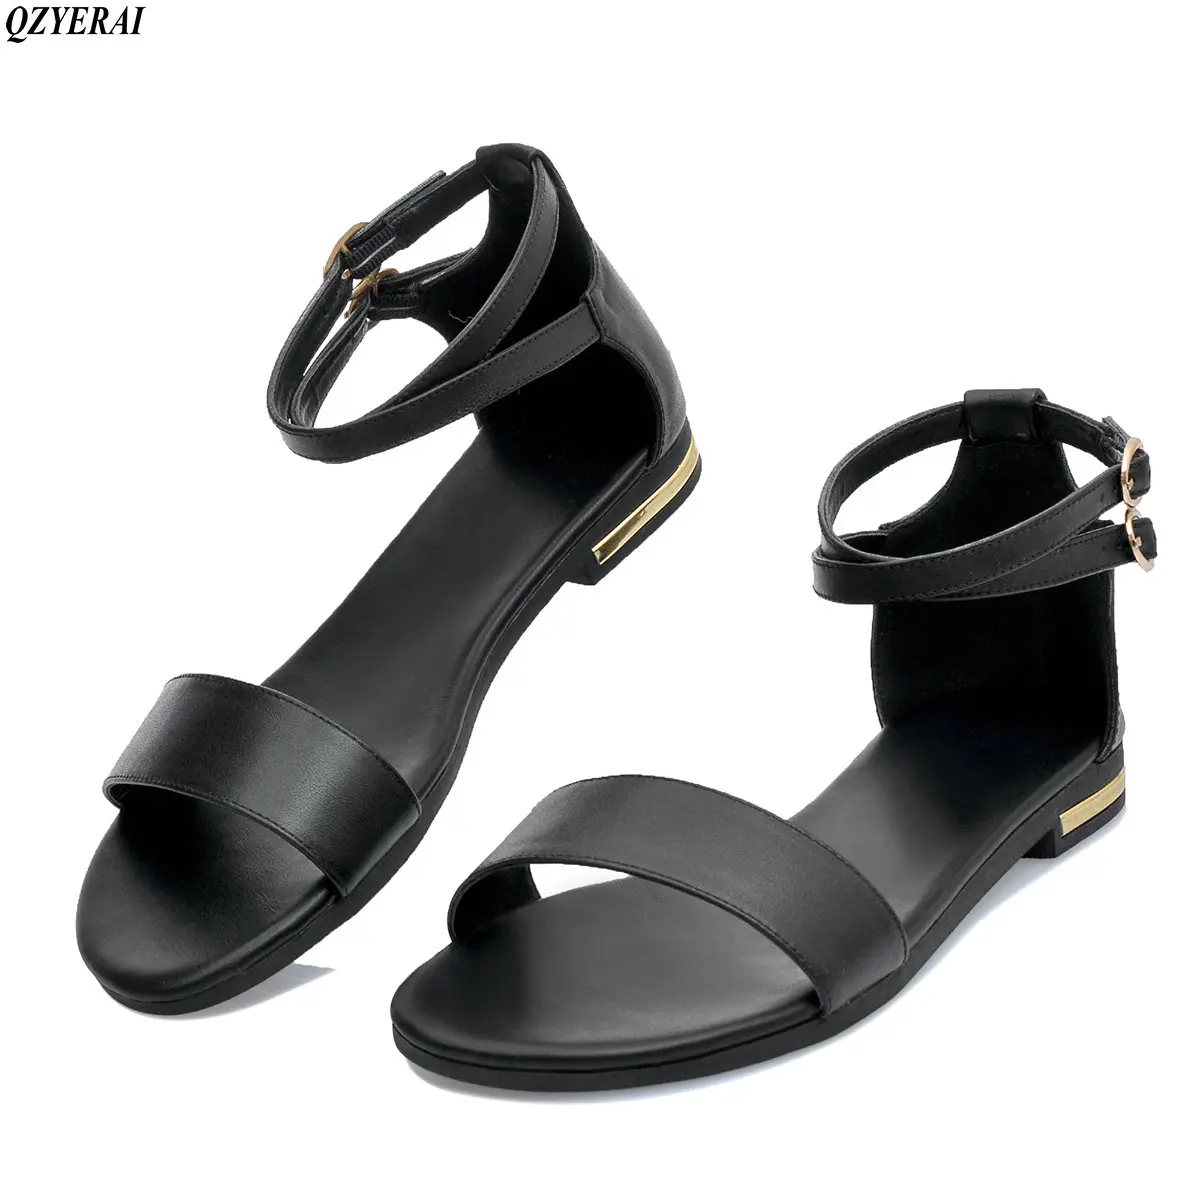 

QZYERAI 2018 Summer sandals 100% pure cowhide fashion women's shoes, fashion comfort casual shoes leather sandals size 34-43